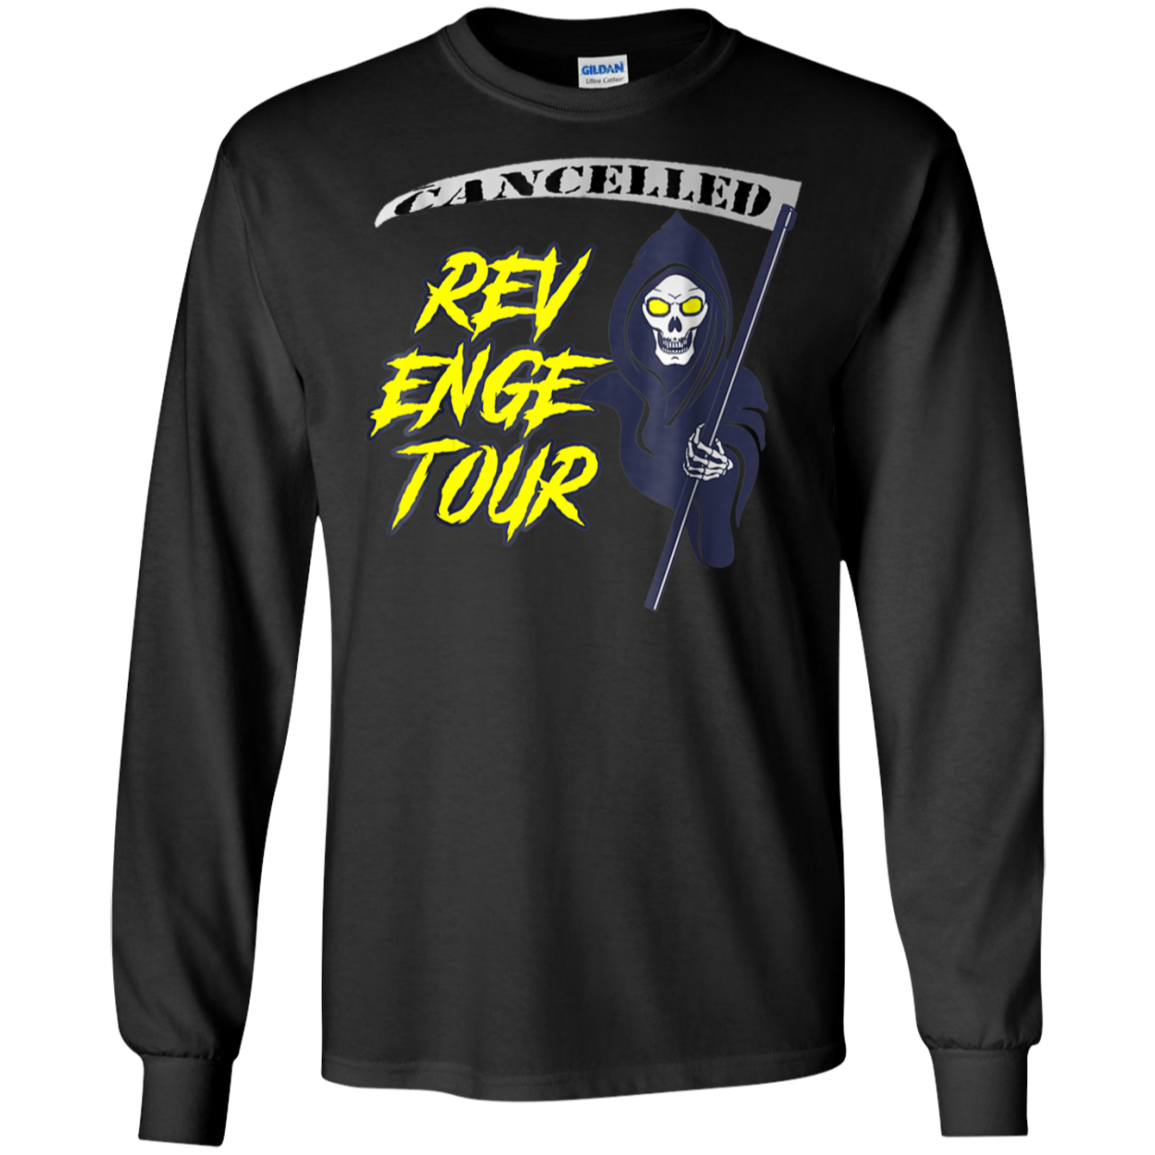 Revenge Tour Cancelled T Shirt G240 Ls Ultra T-shirt